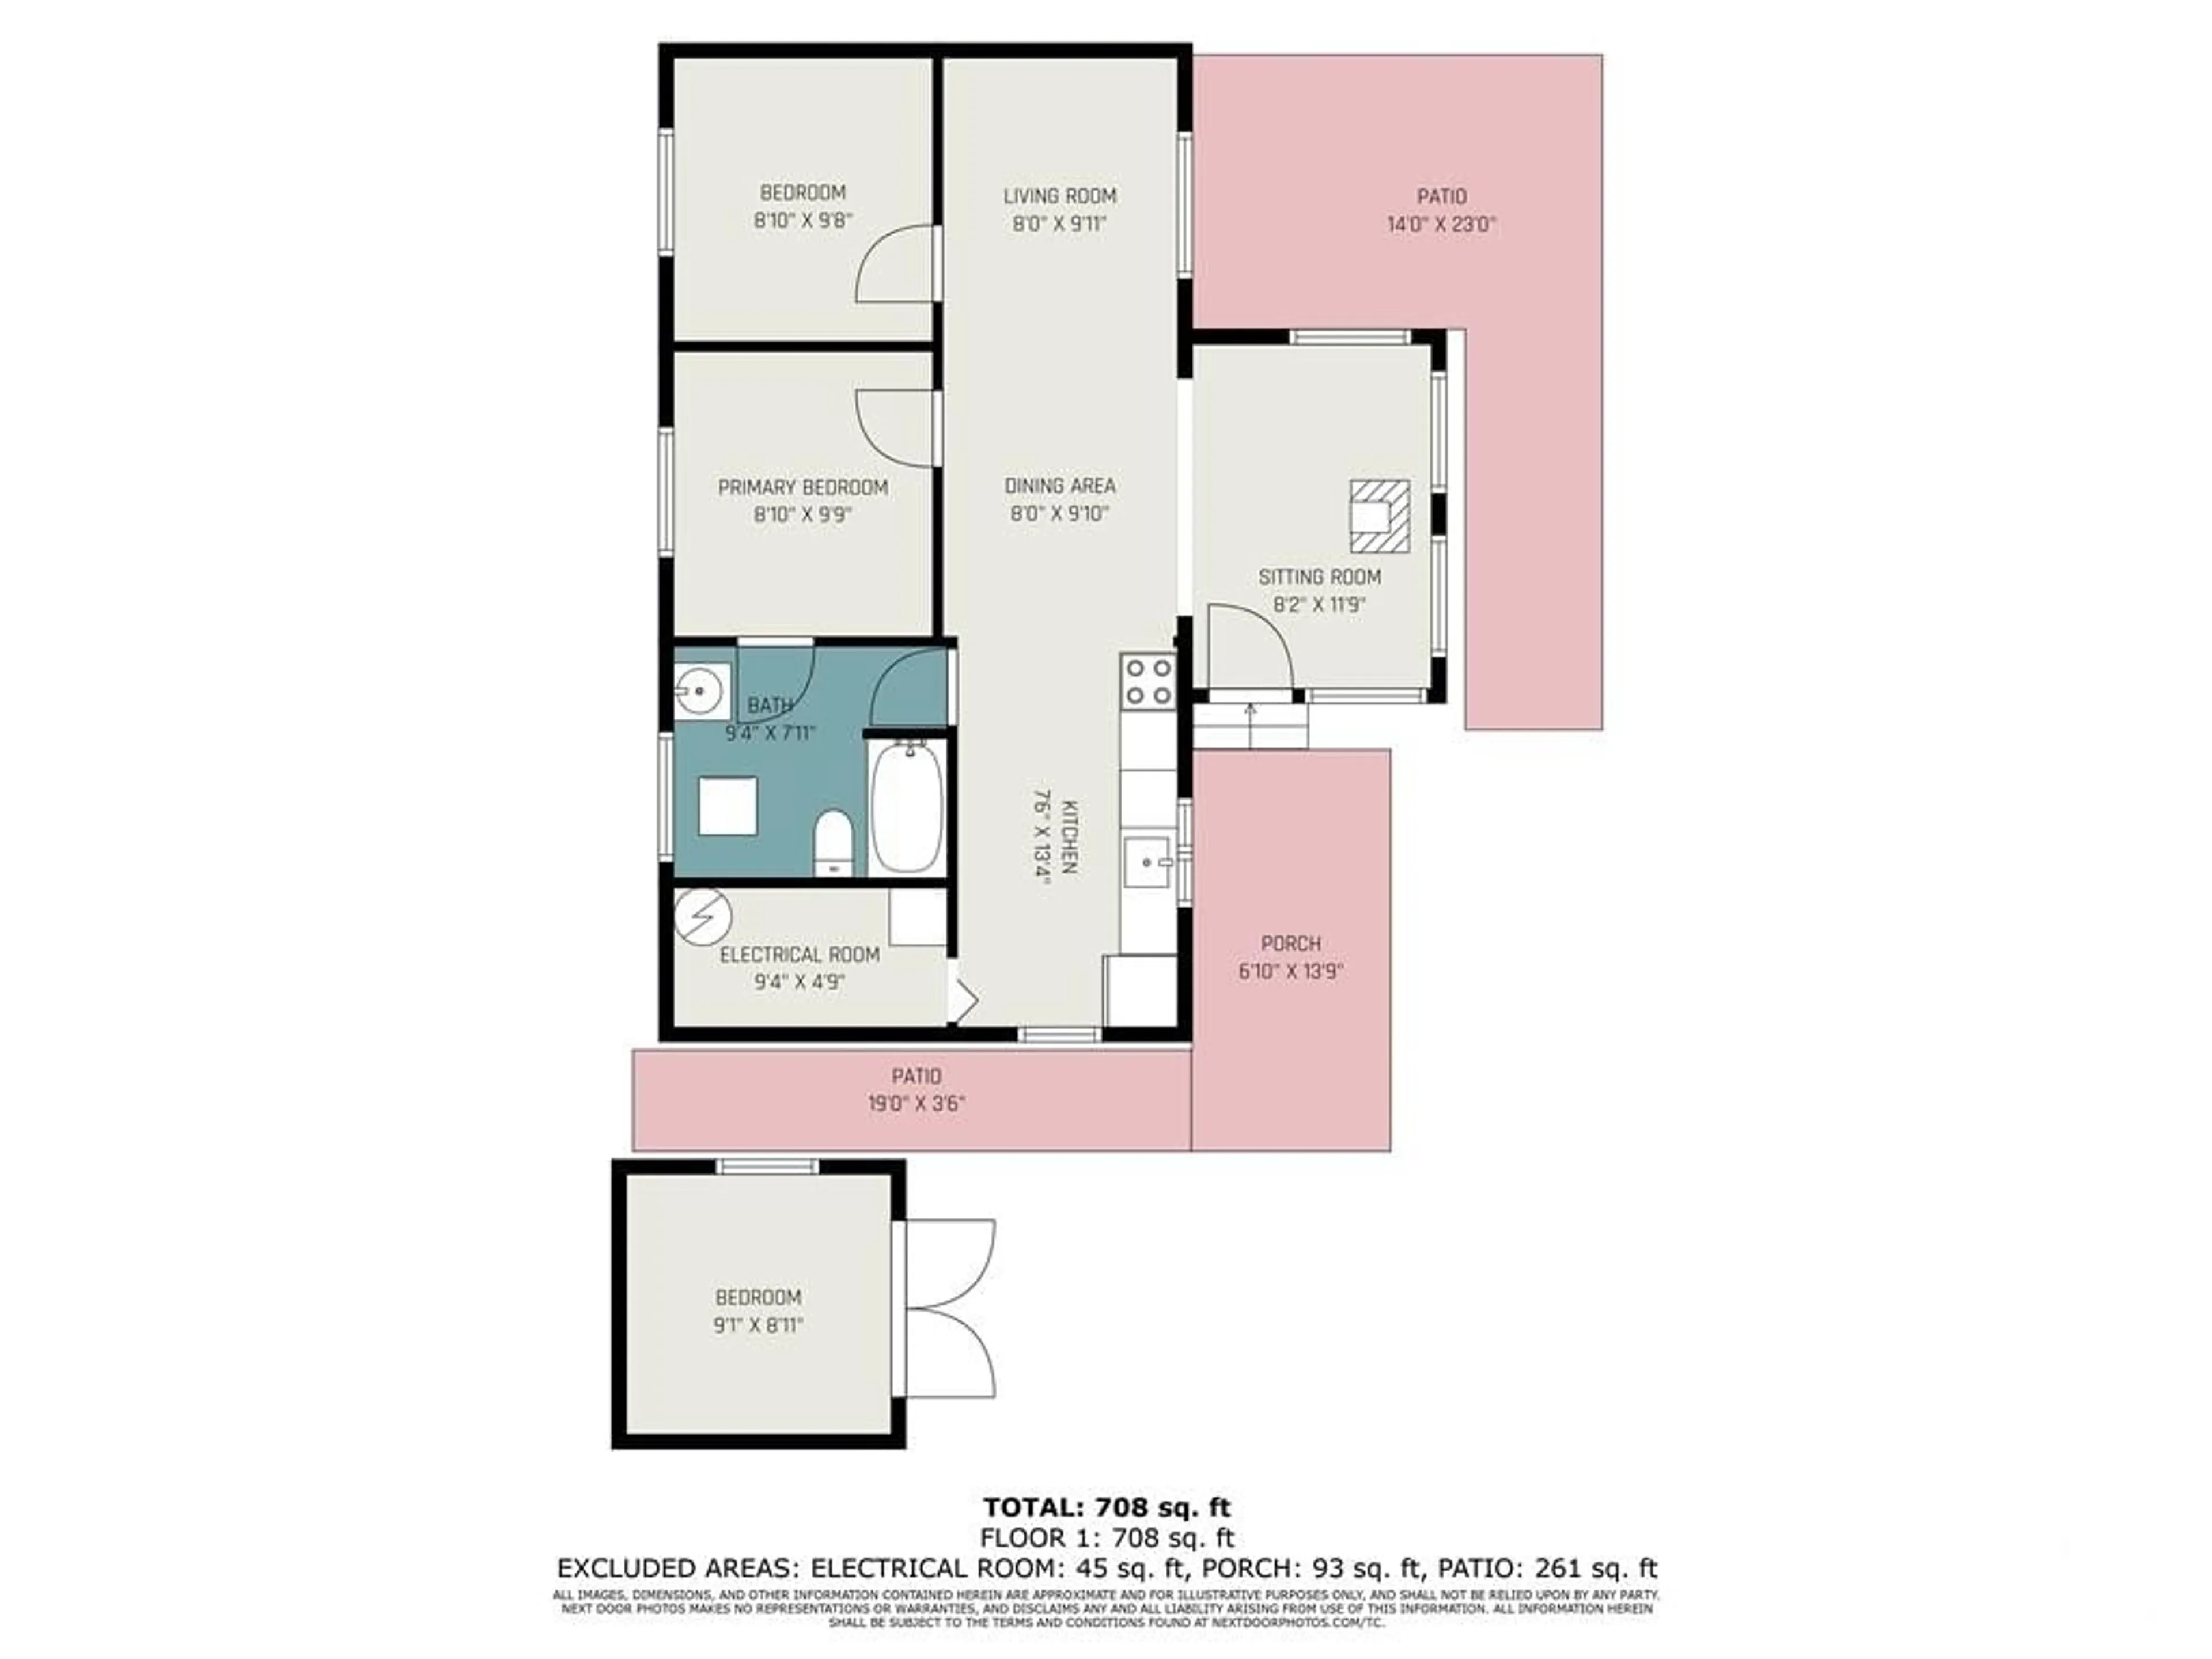 Floor plan for 4186 RIVER Rd, Renfrew Ontario K7V 3Z8